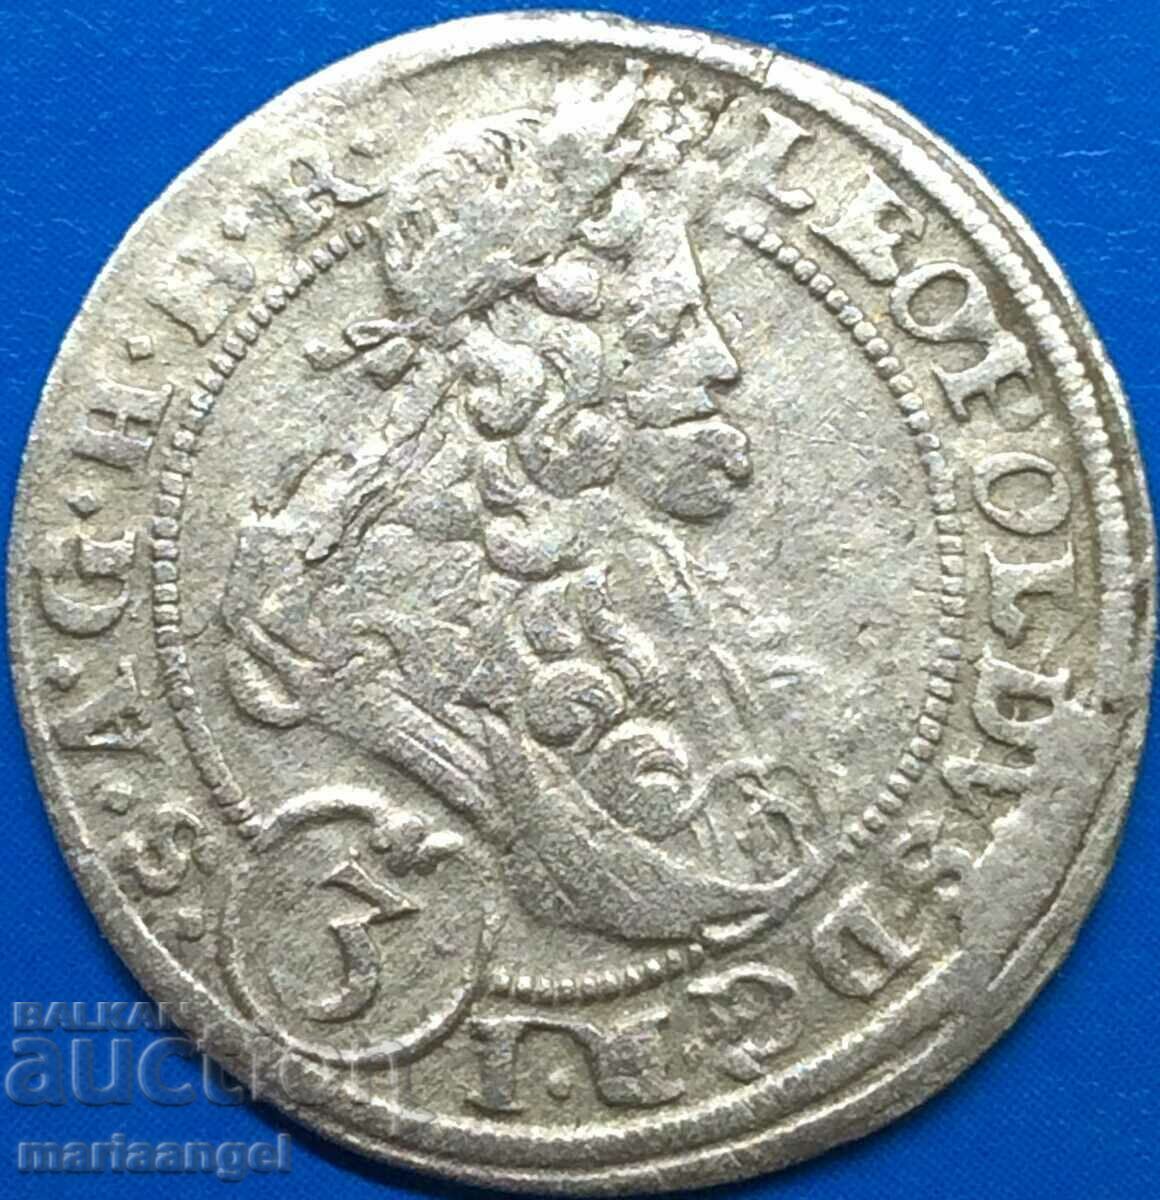 Силезия 3 кройцера 1664 Сигизмунд Австрия сребро